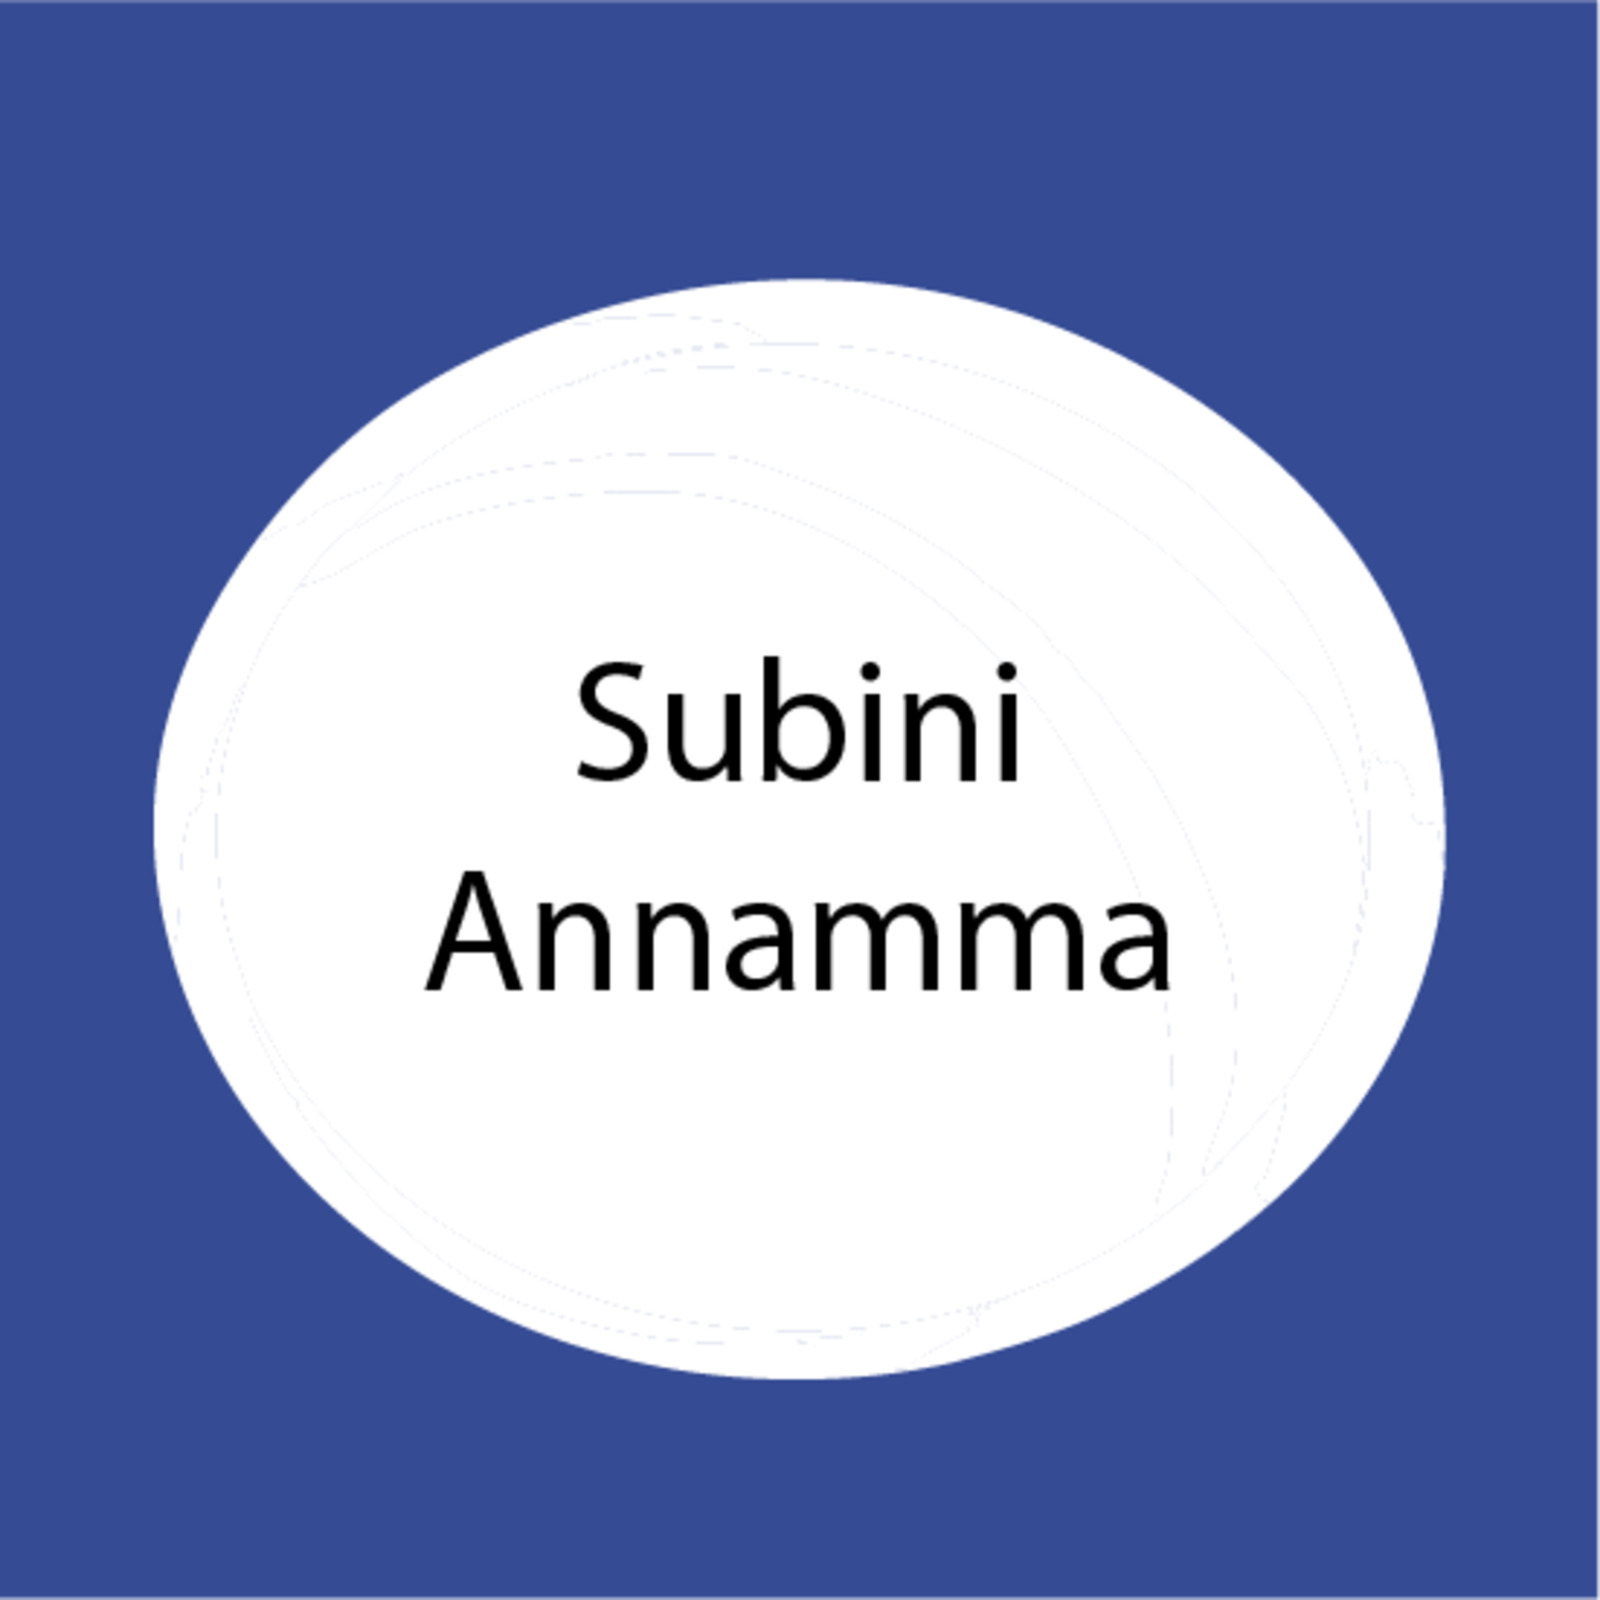 Subini Annamma.png